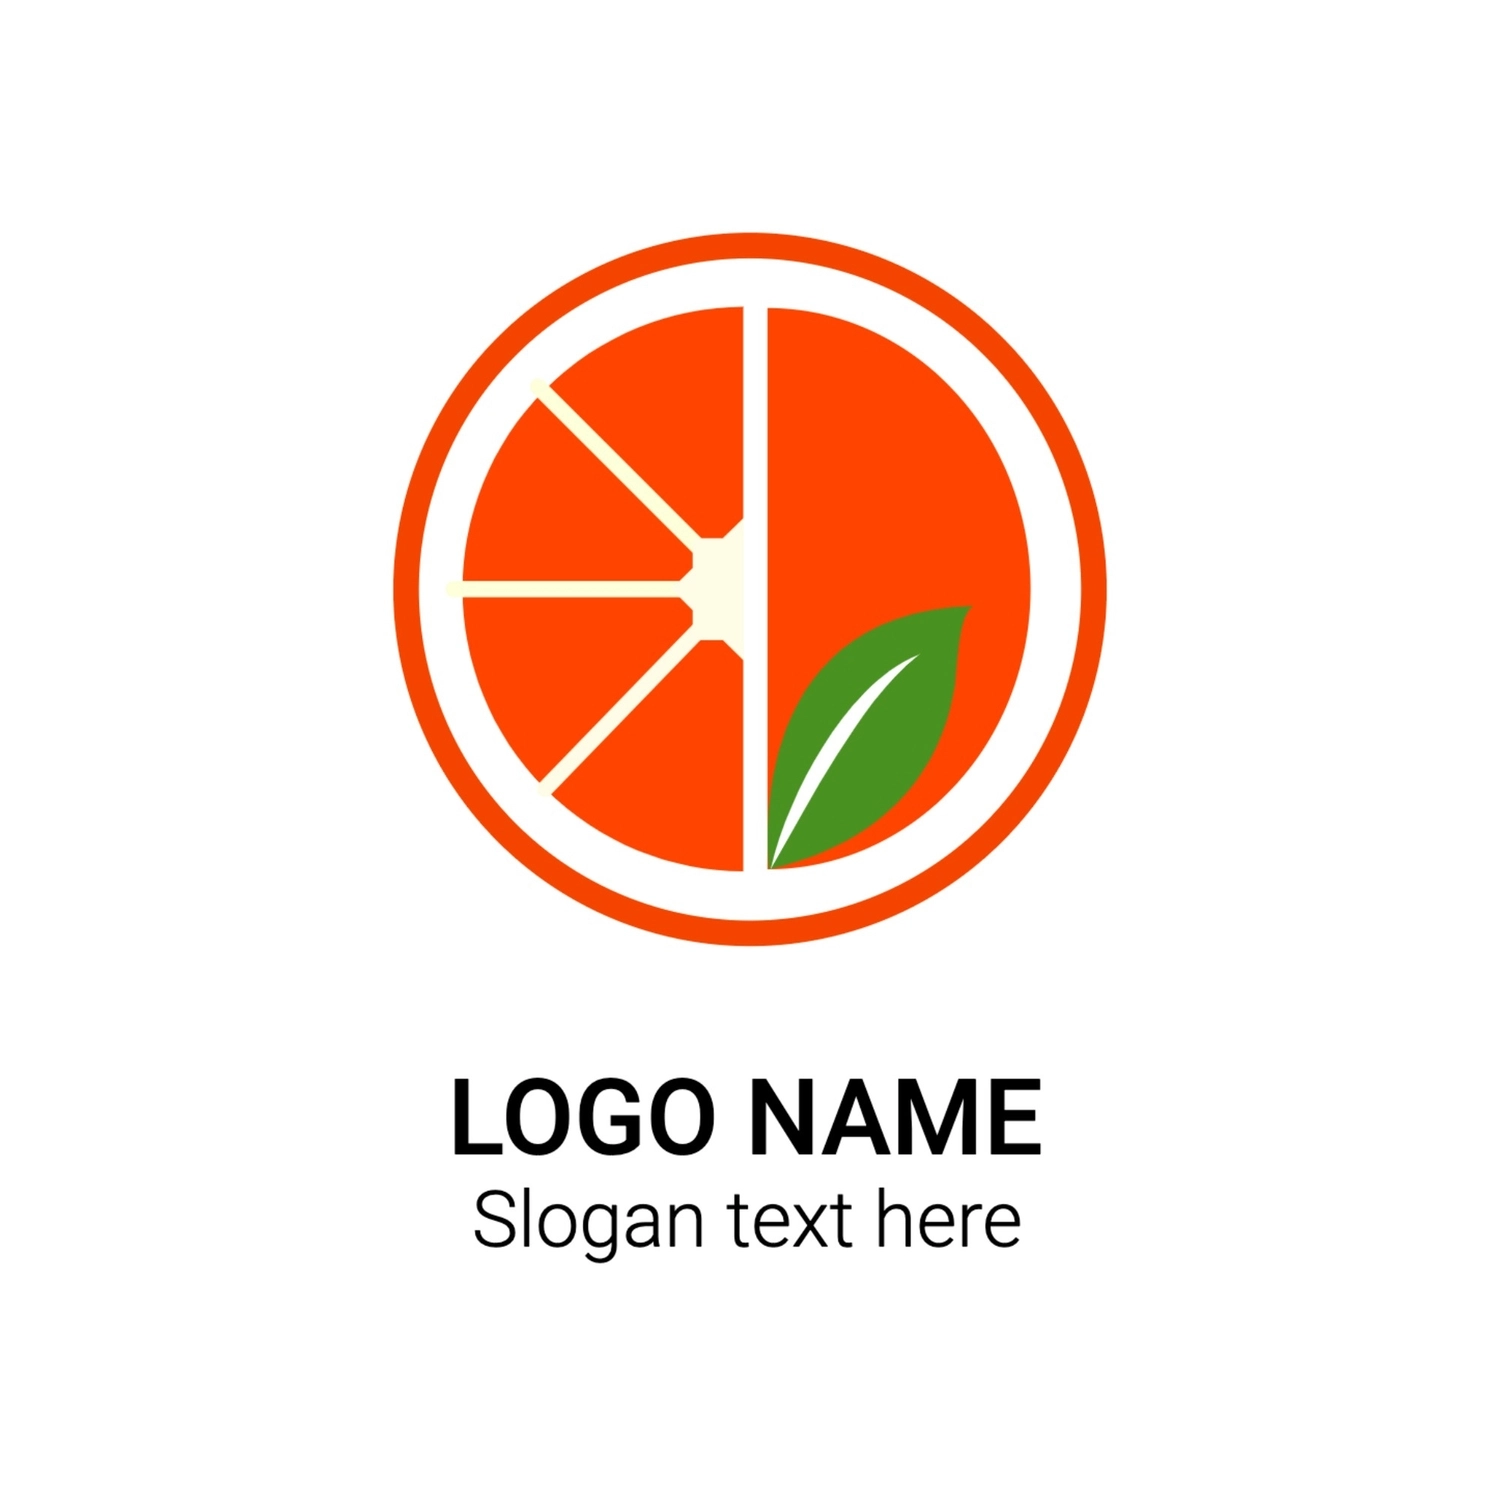 オレンジのロゴ, イラスト, 作成, デザイン, ロゴテンプレート